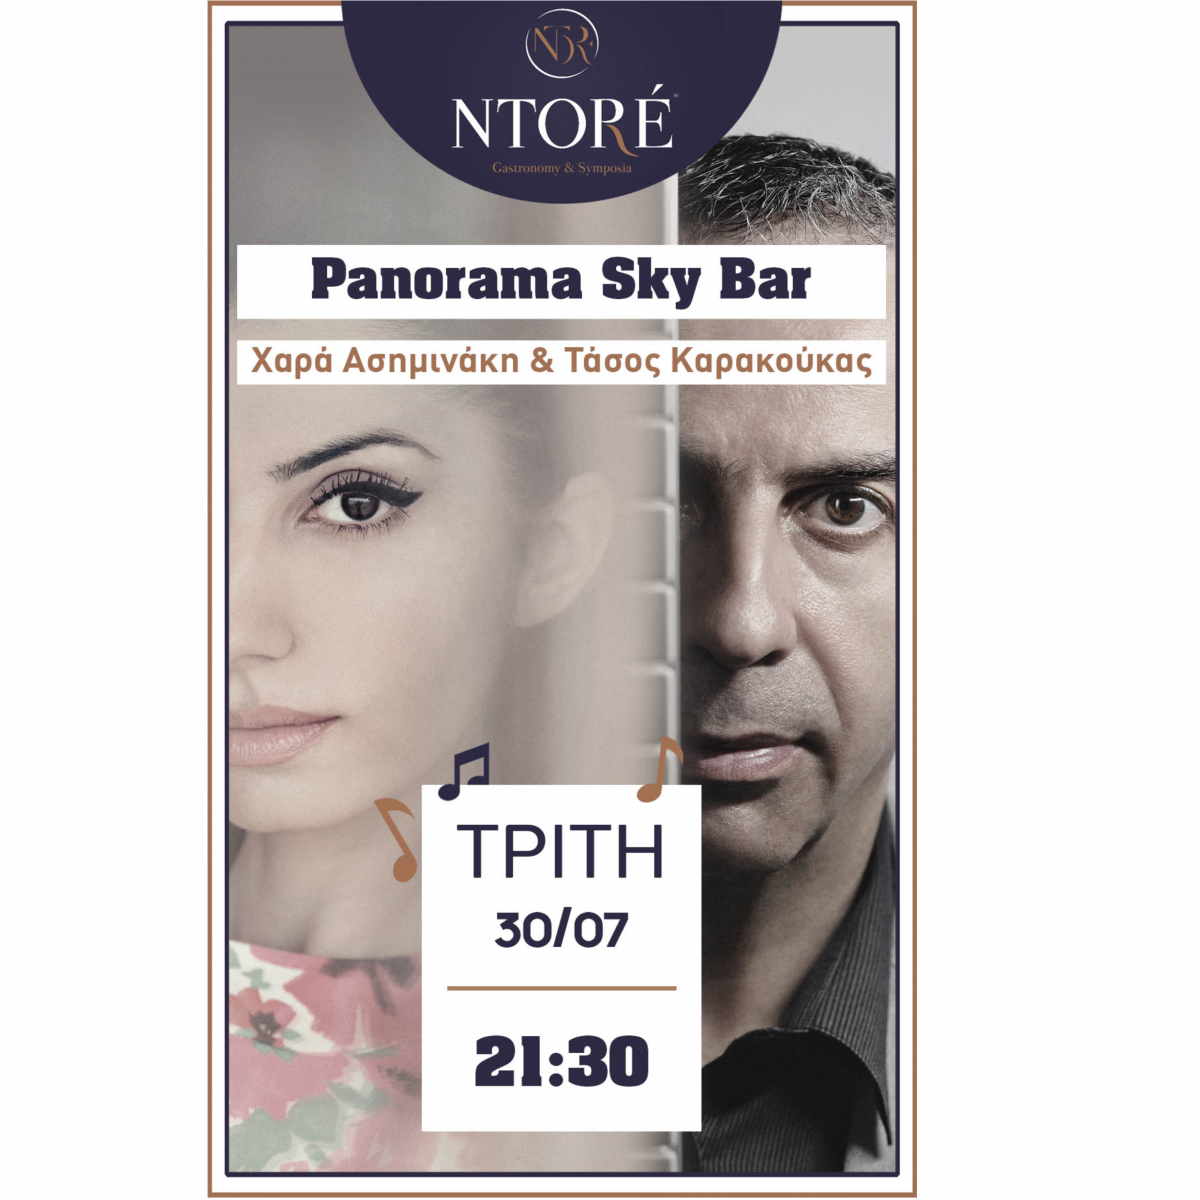 Η Χαρά Ασημινάκη και ο Τάσος Καρακούκας, στο Panorama Sky Bar, την Τρίτη 30/07 στις 21:30.